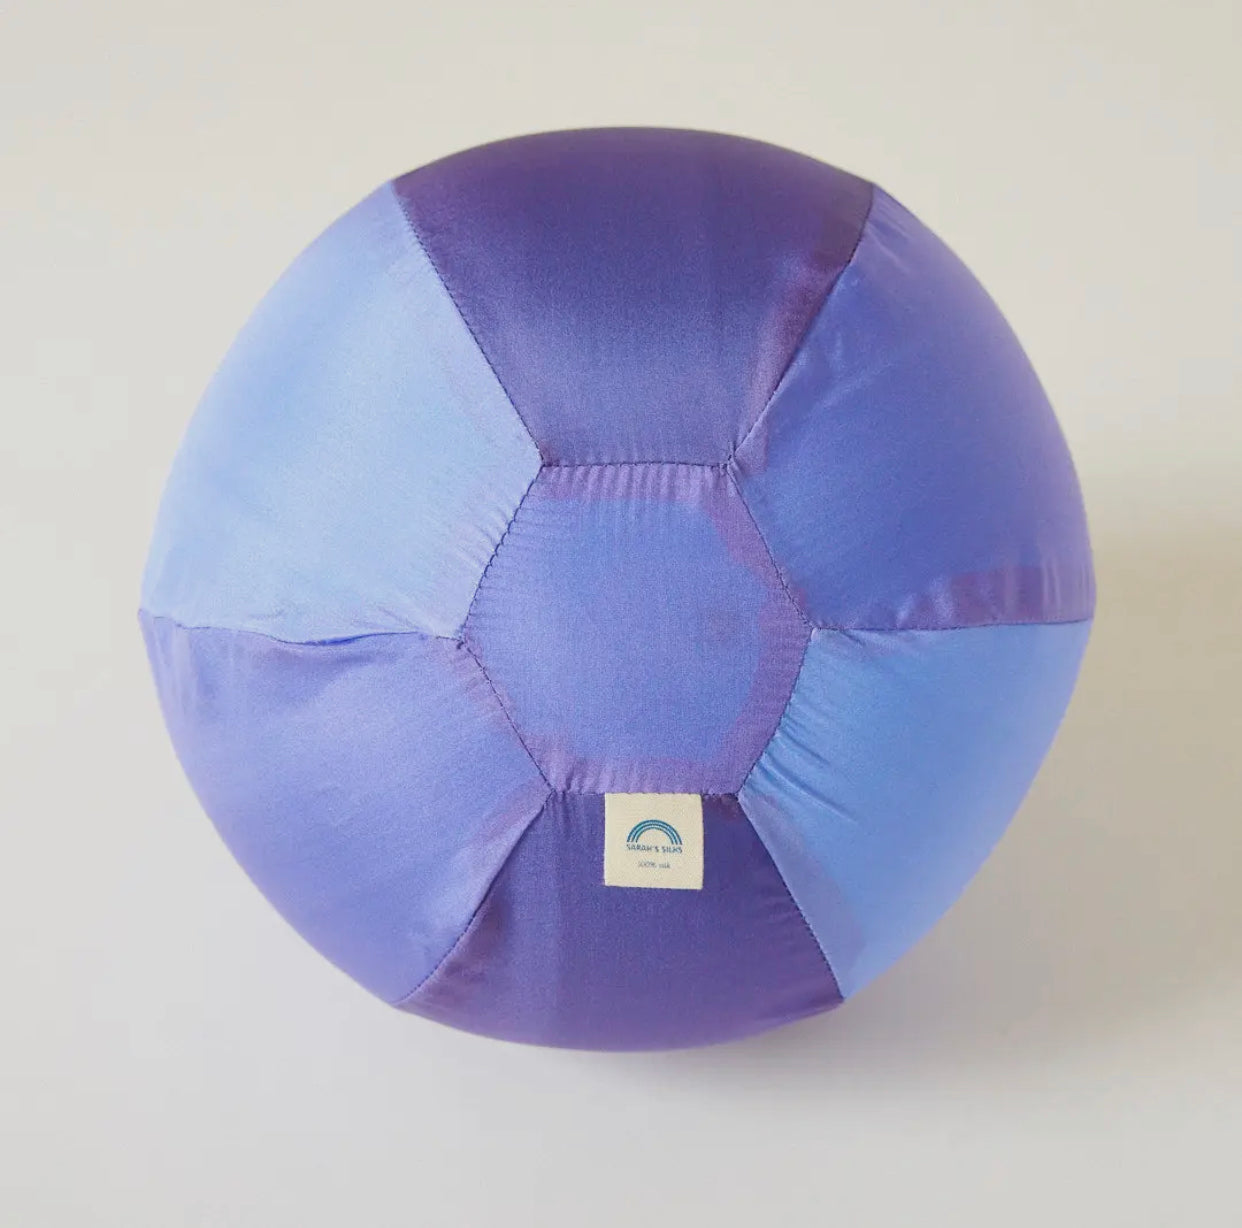 Purple Balloon Ball - 100% Silk Cover for Balloons